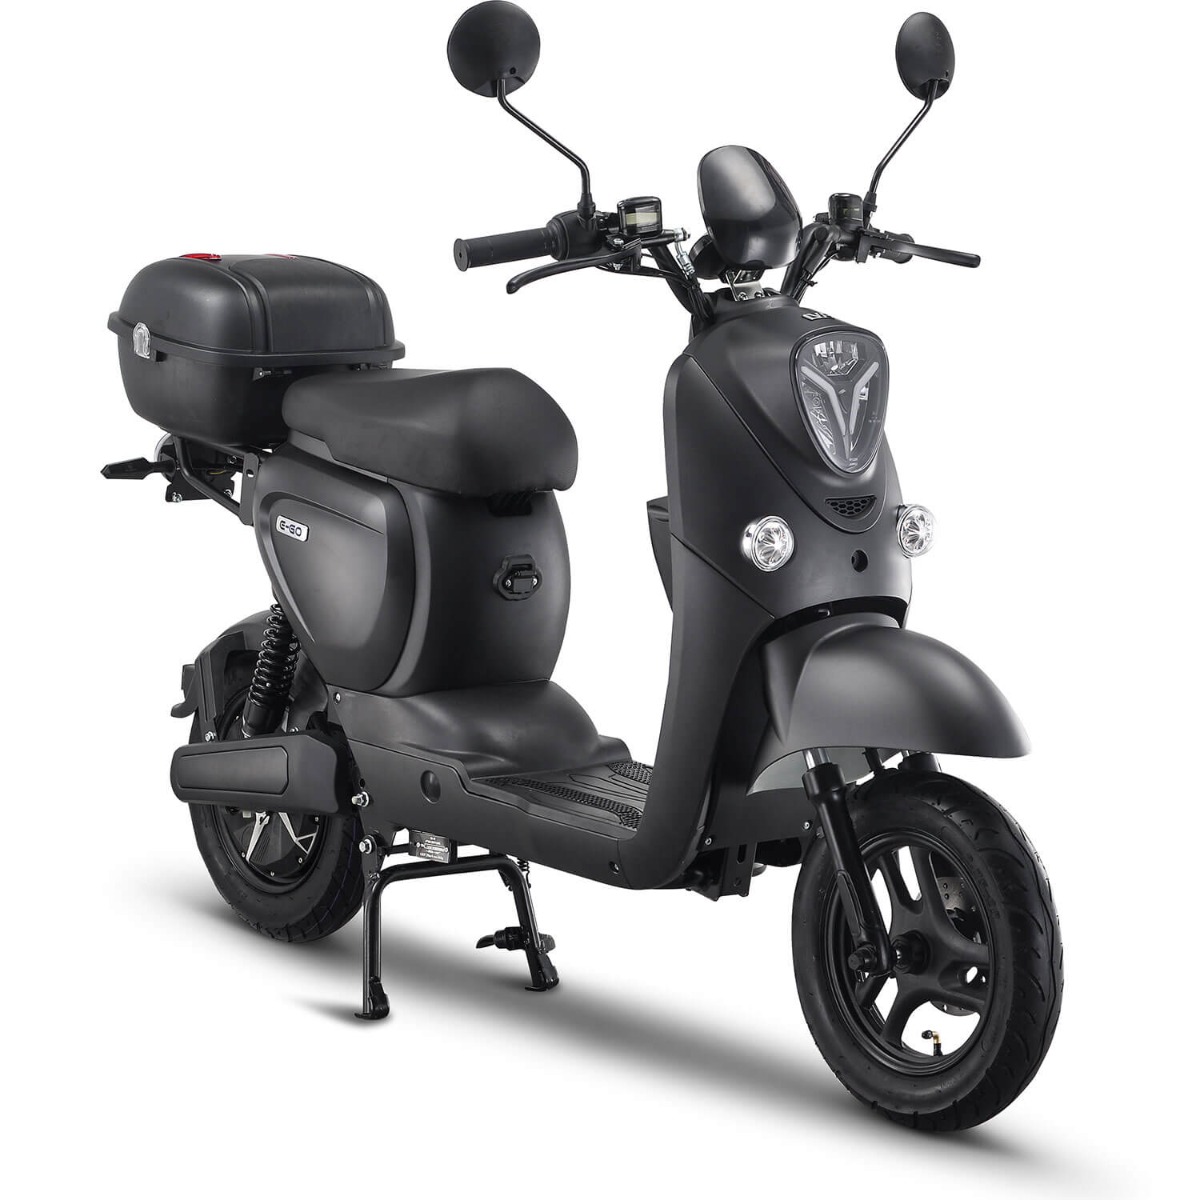 De senzo () gener is een ideale e scooter () als je wendbaar en comfortabel wilt reizen. dit stijlvolle no ...